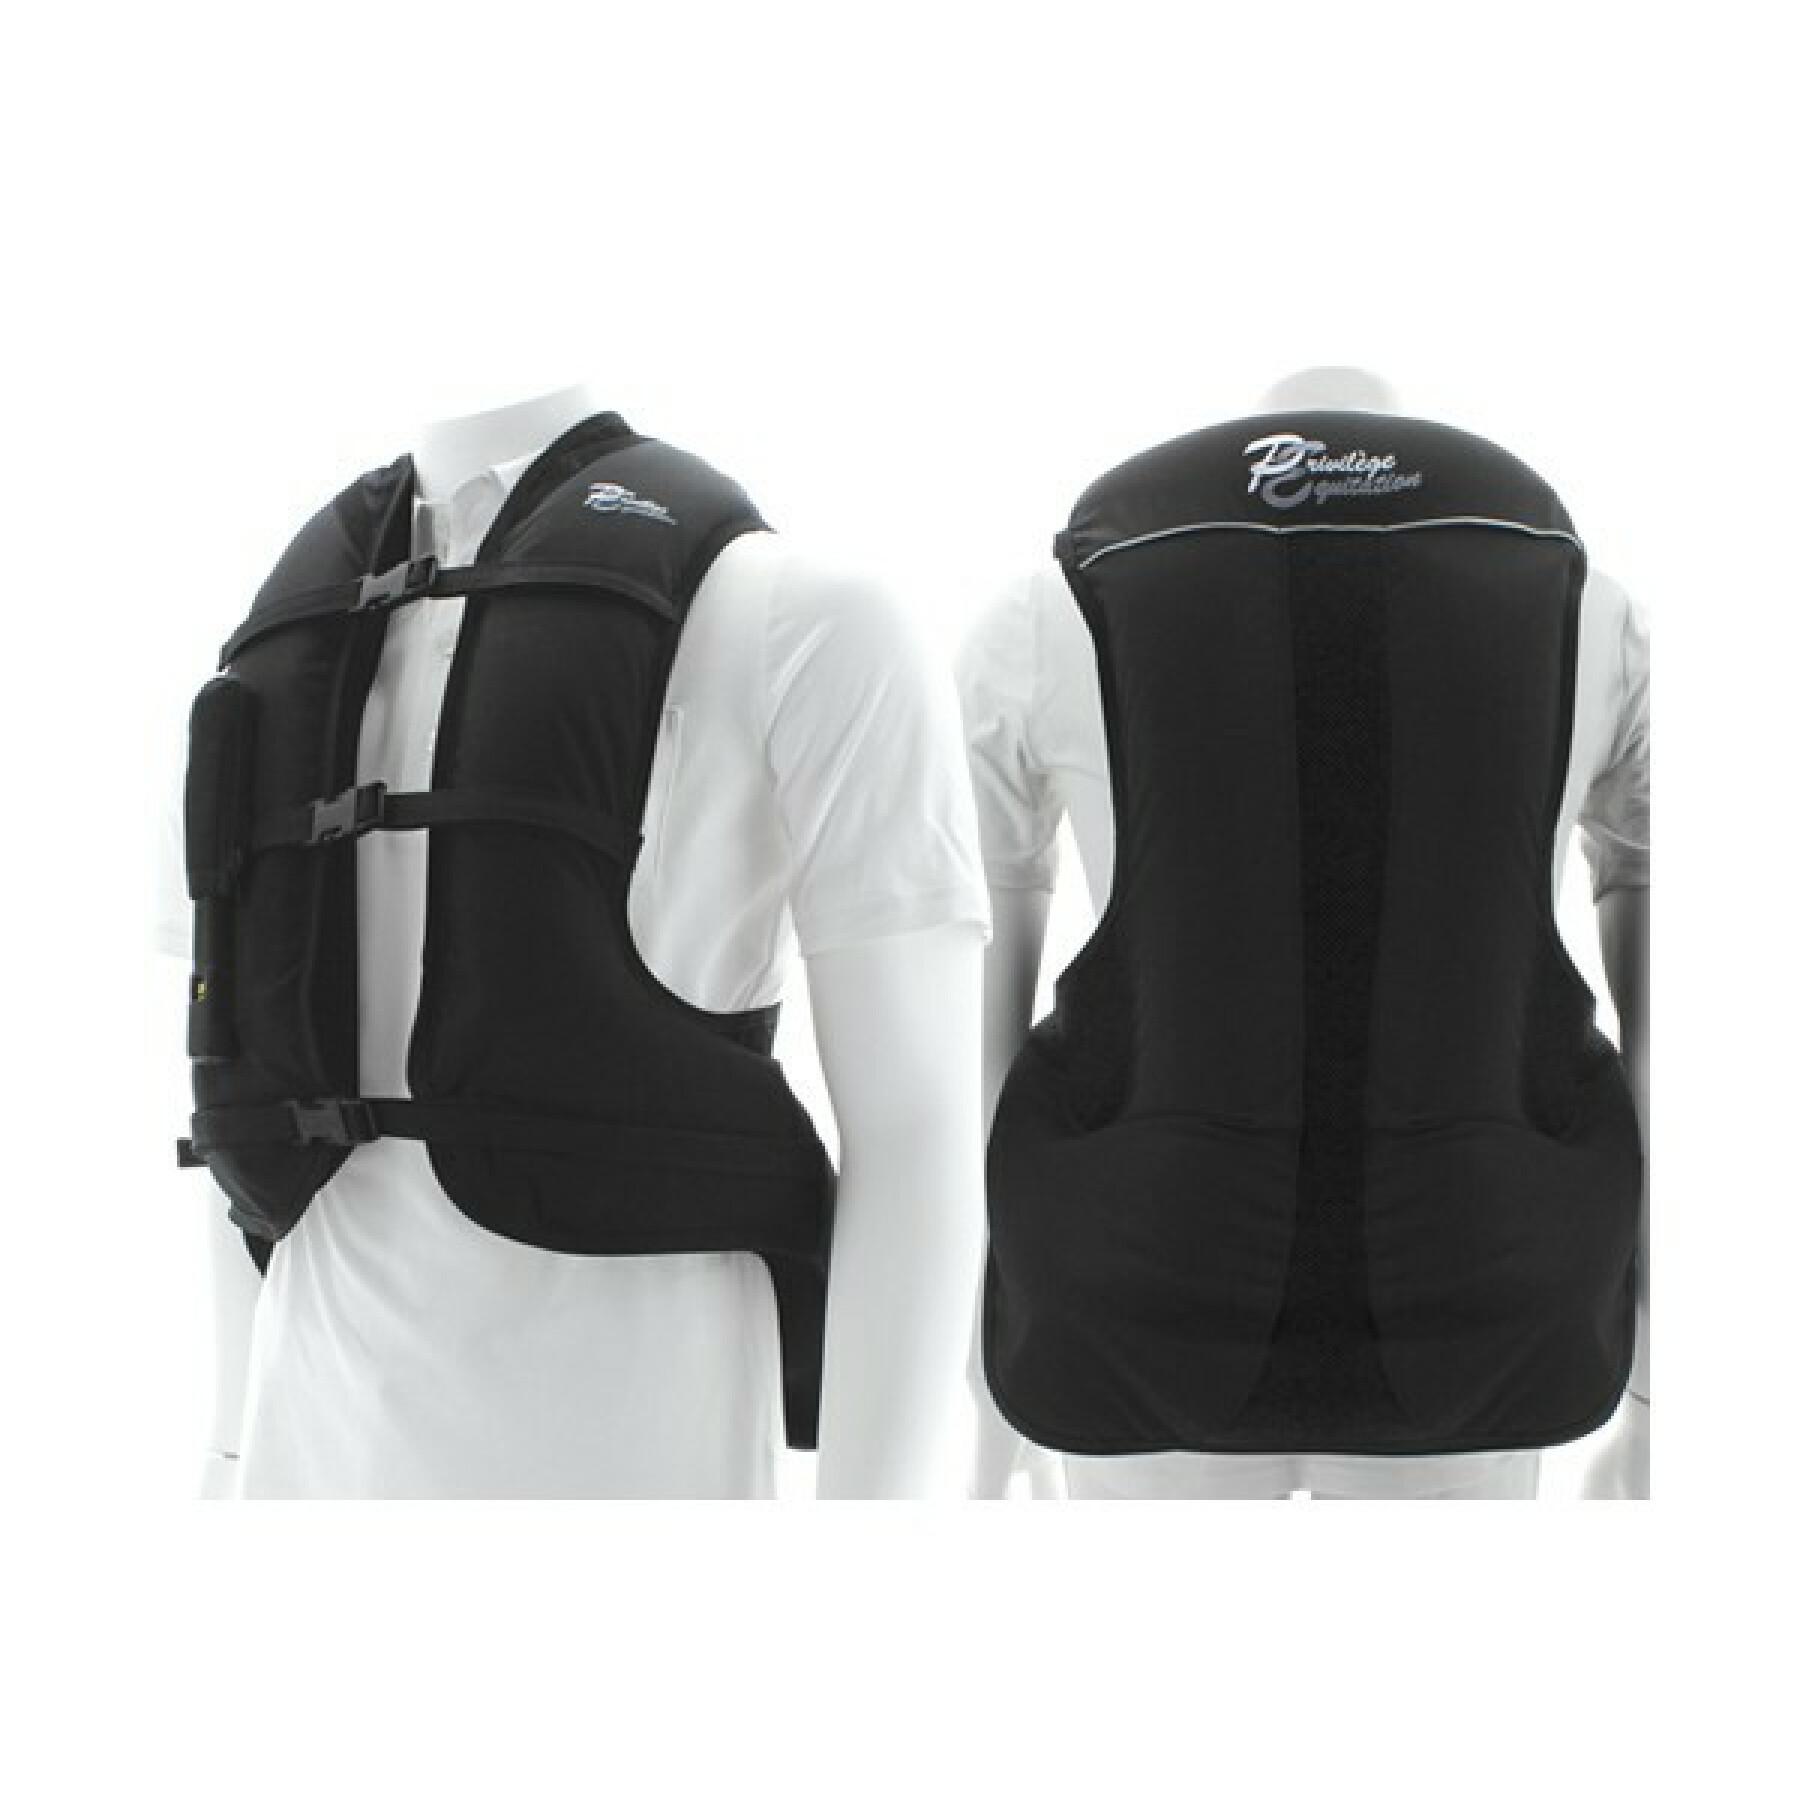 Polyethylene airbag vest for children Privilège Equitation